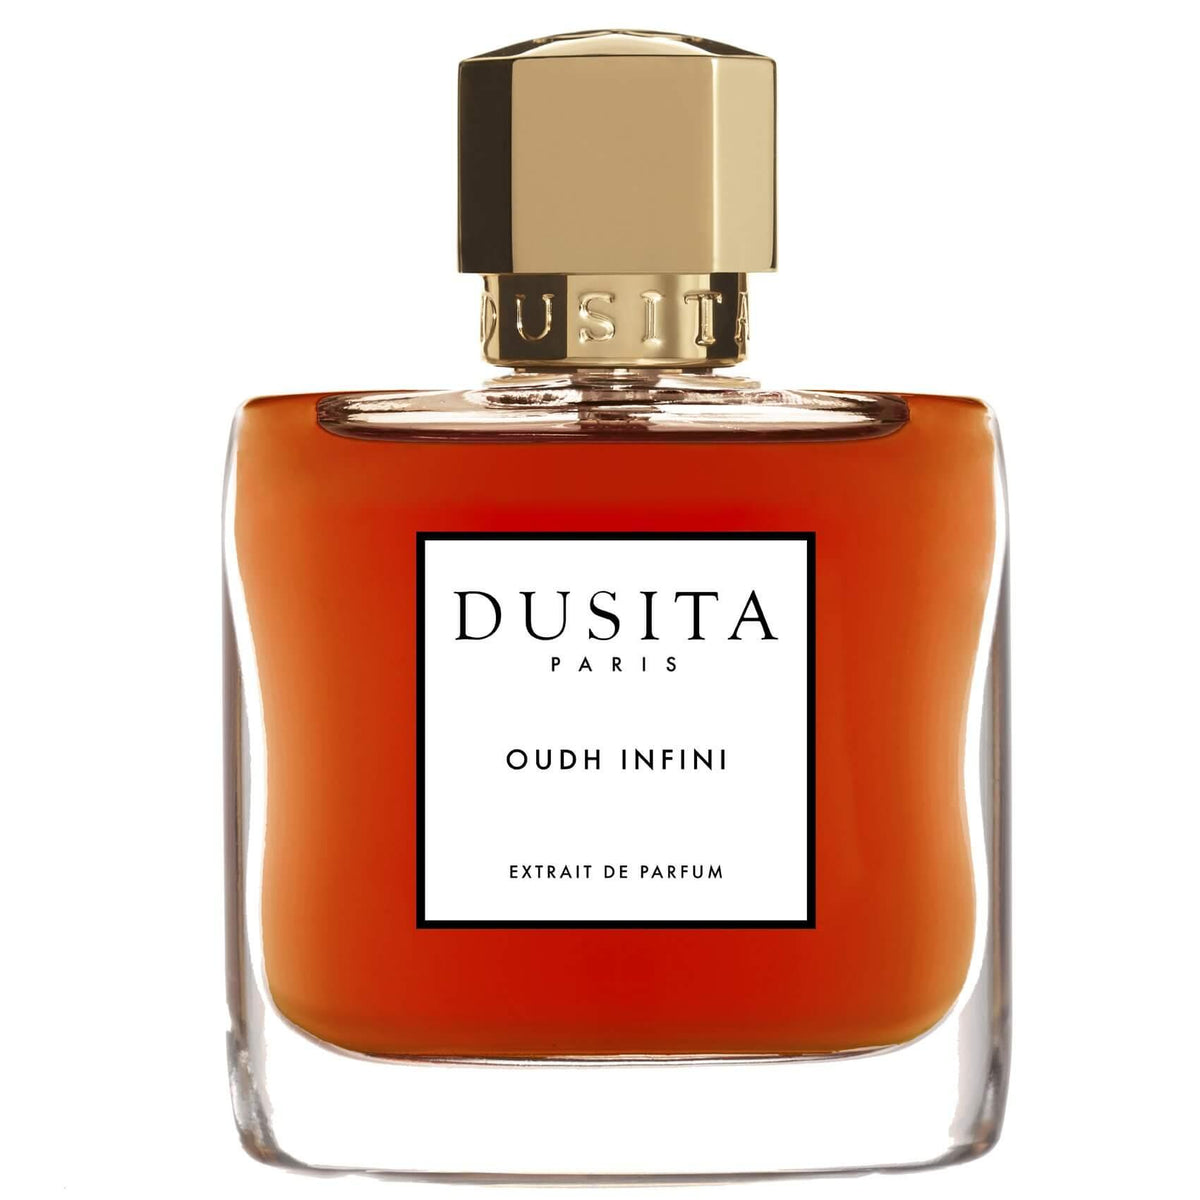 Oudh Infini by Dusita at Indigo Perfumery